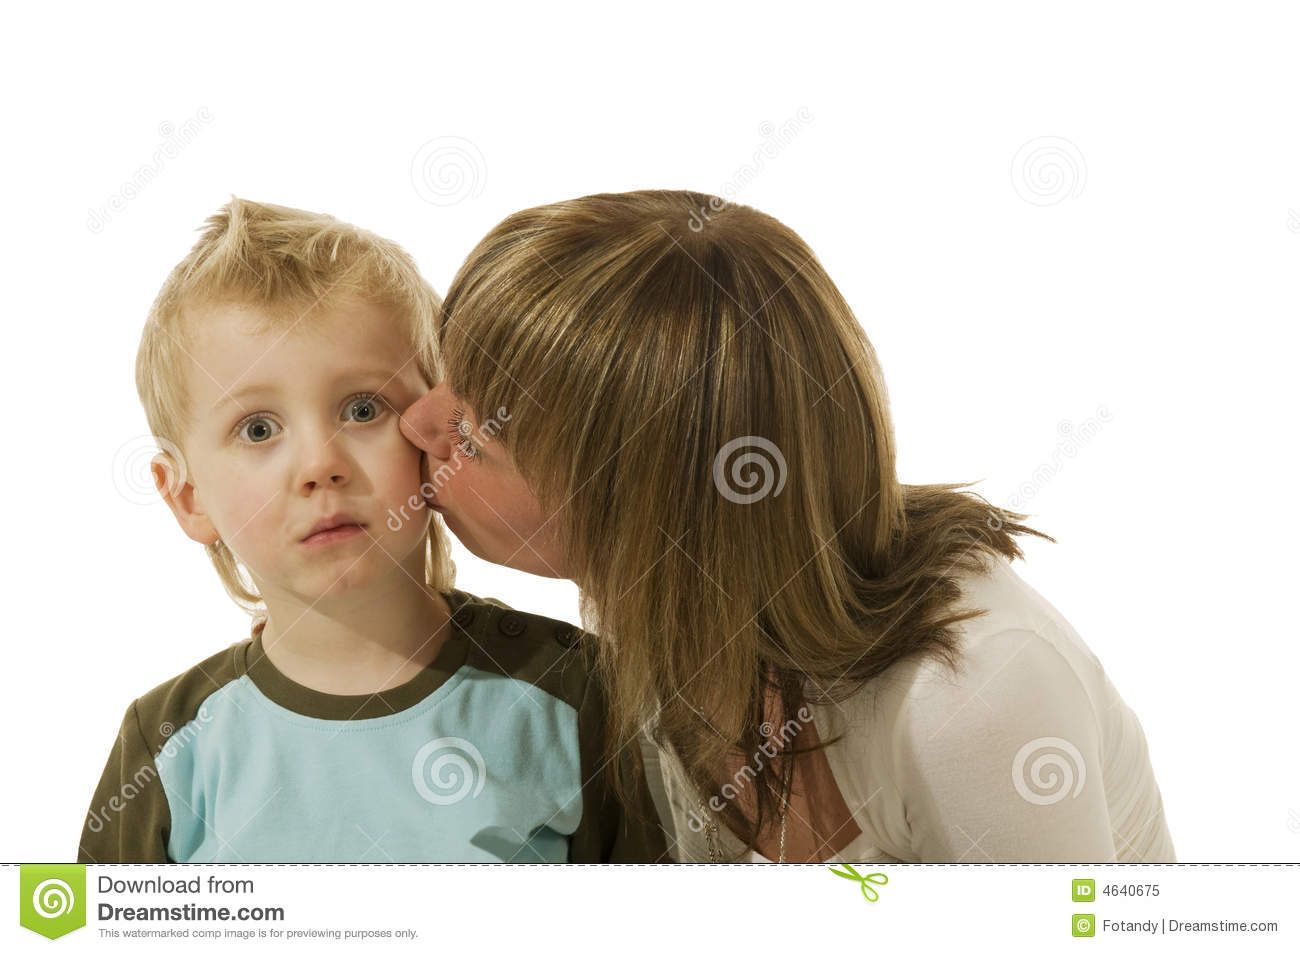 Gem reccomend Women kiss little boy